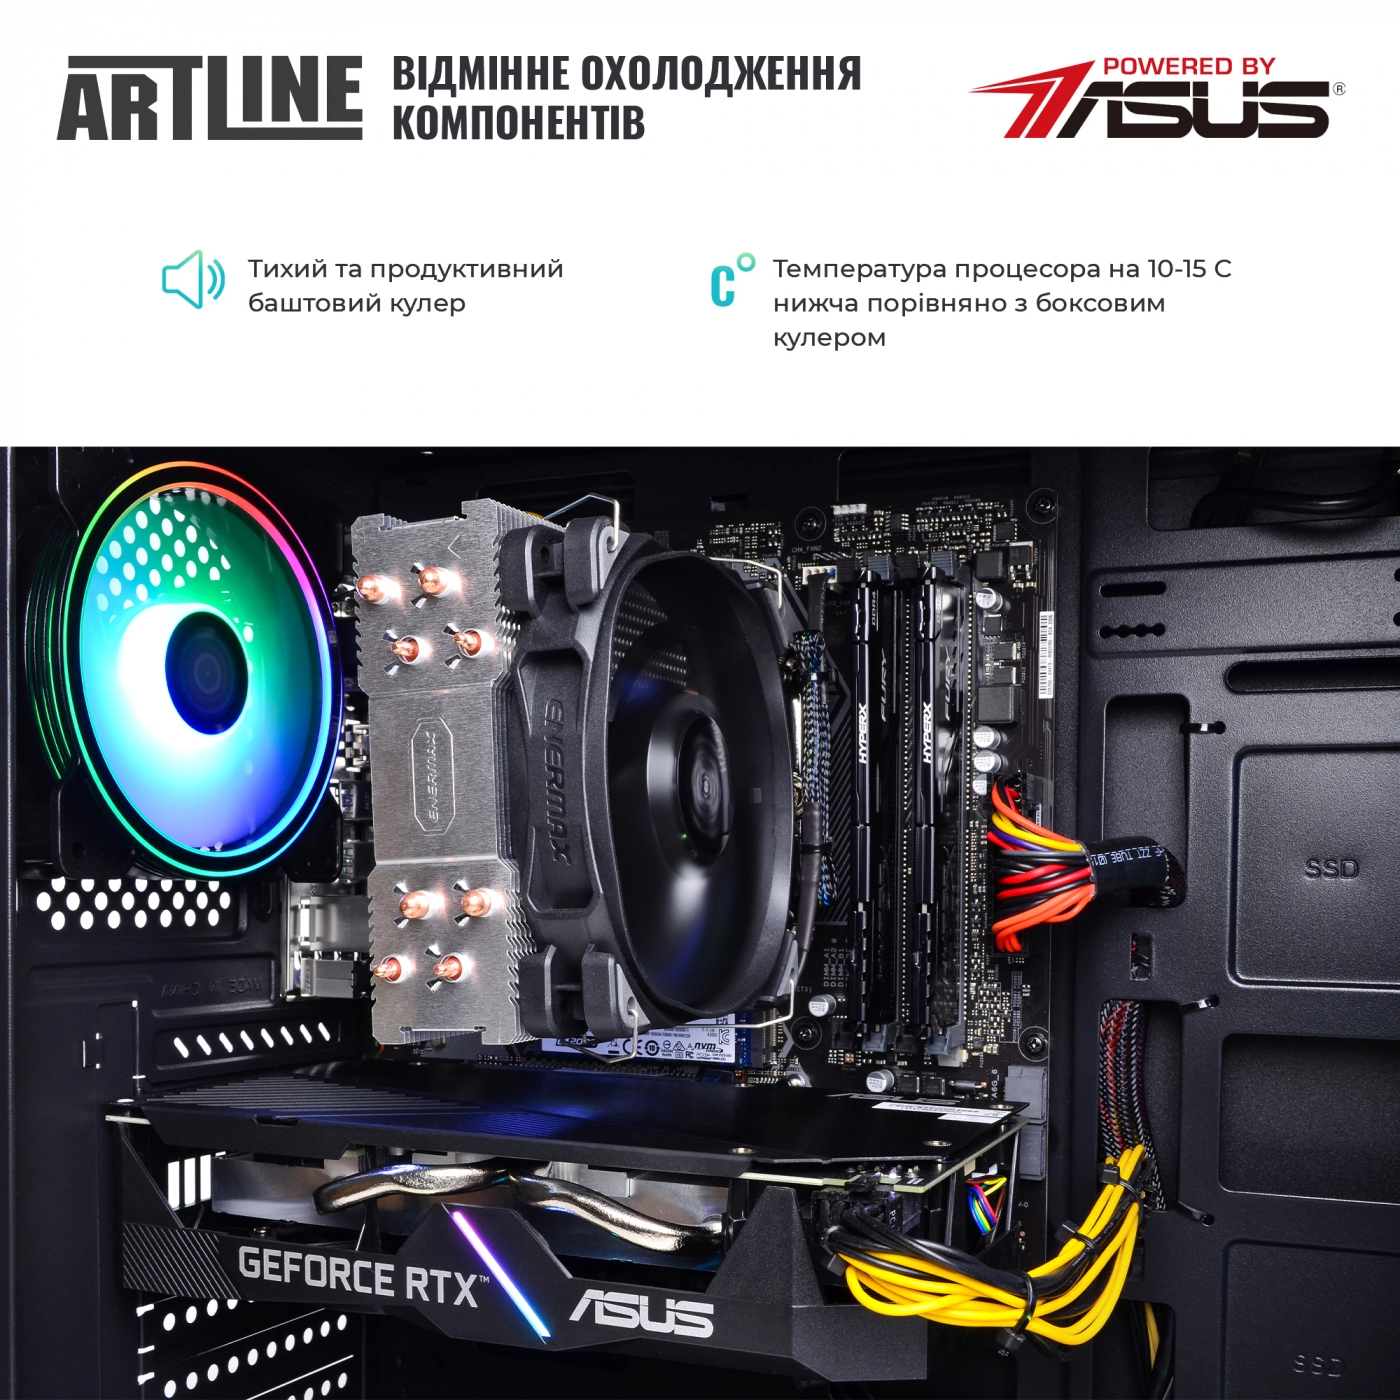 Купить Компьютер ARTLINE Gaming X85v20 - фото 7